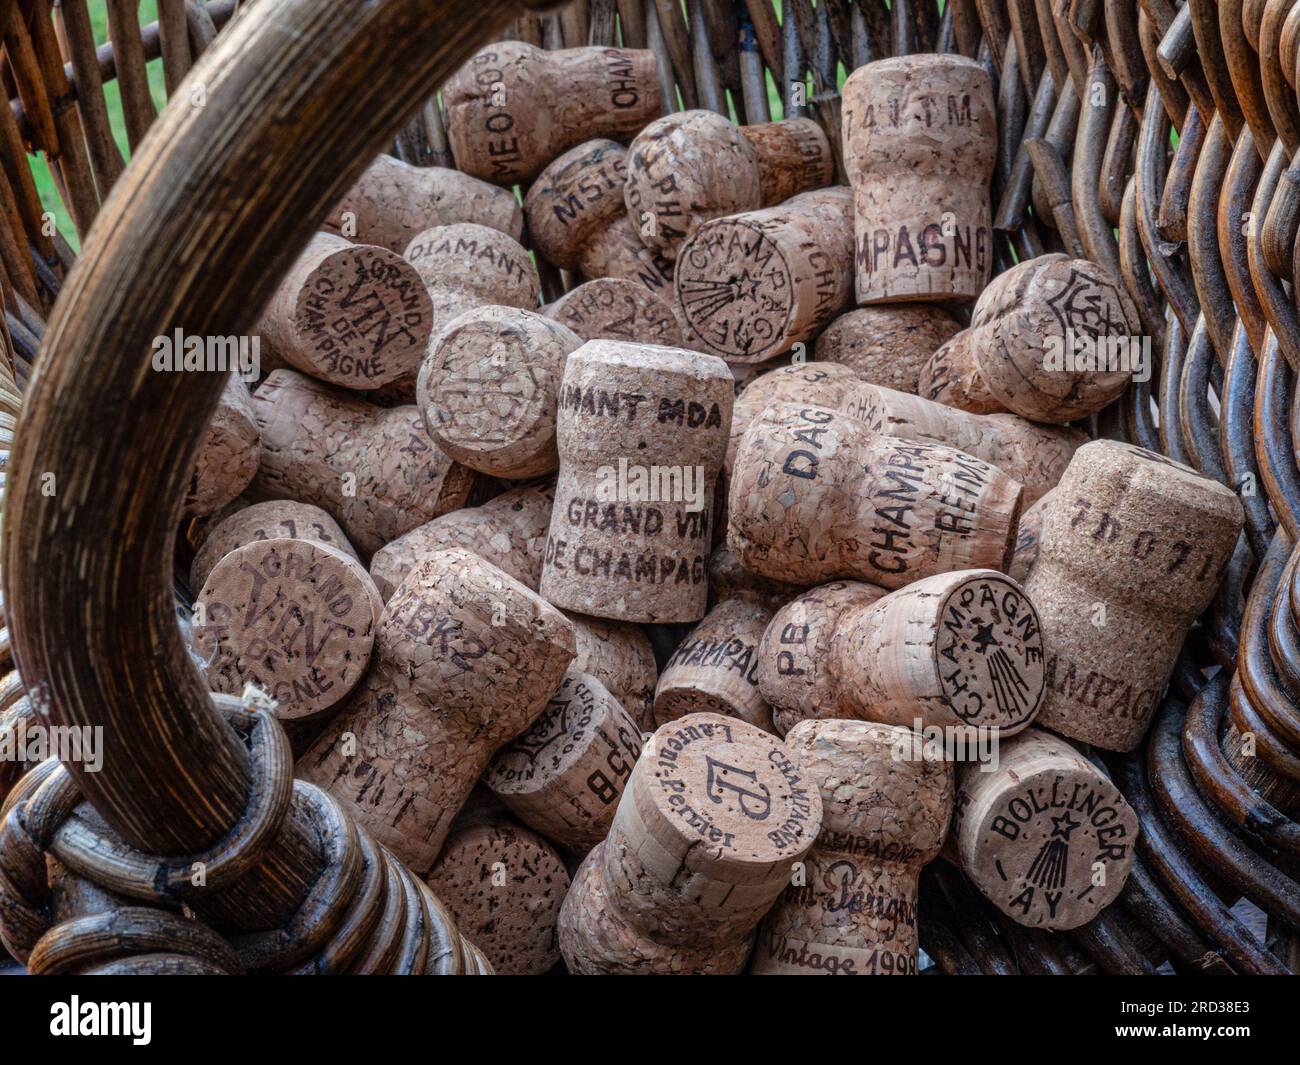 CHAMPAGNERKORKEN ERNTEKONZEPT Bild eines französischen Traubenpflückers Erntekorb mit Auswahl verschiedener feiner Champagnerkorken Frankreich Stockfoto